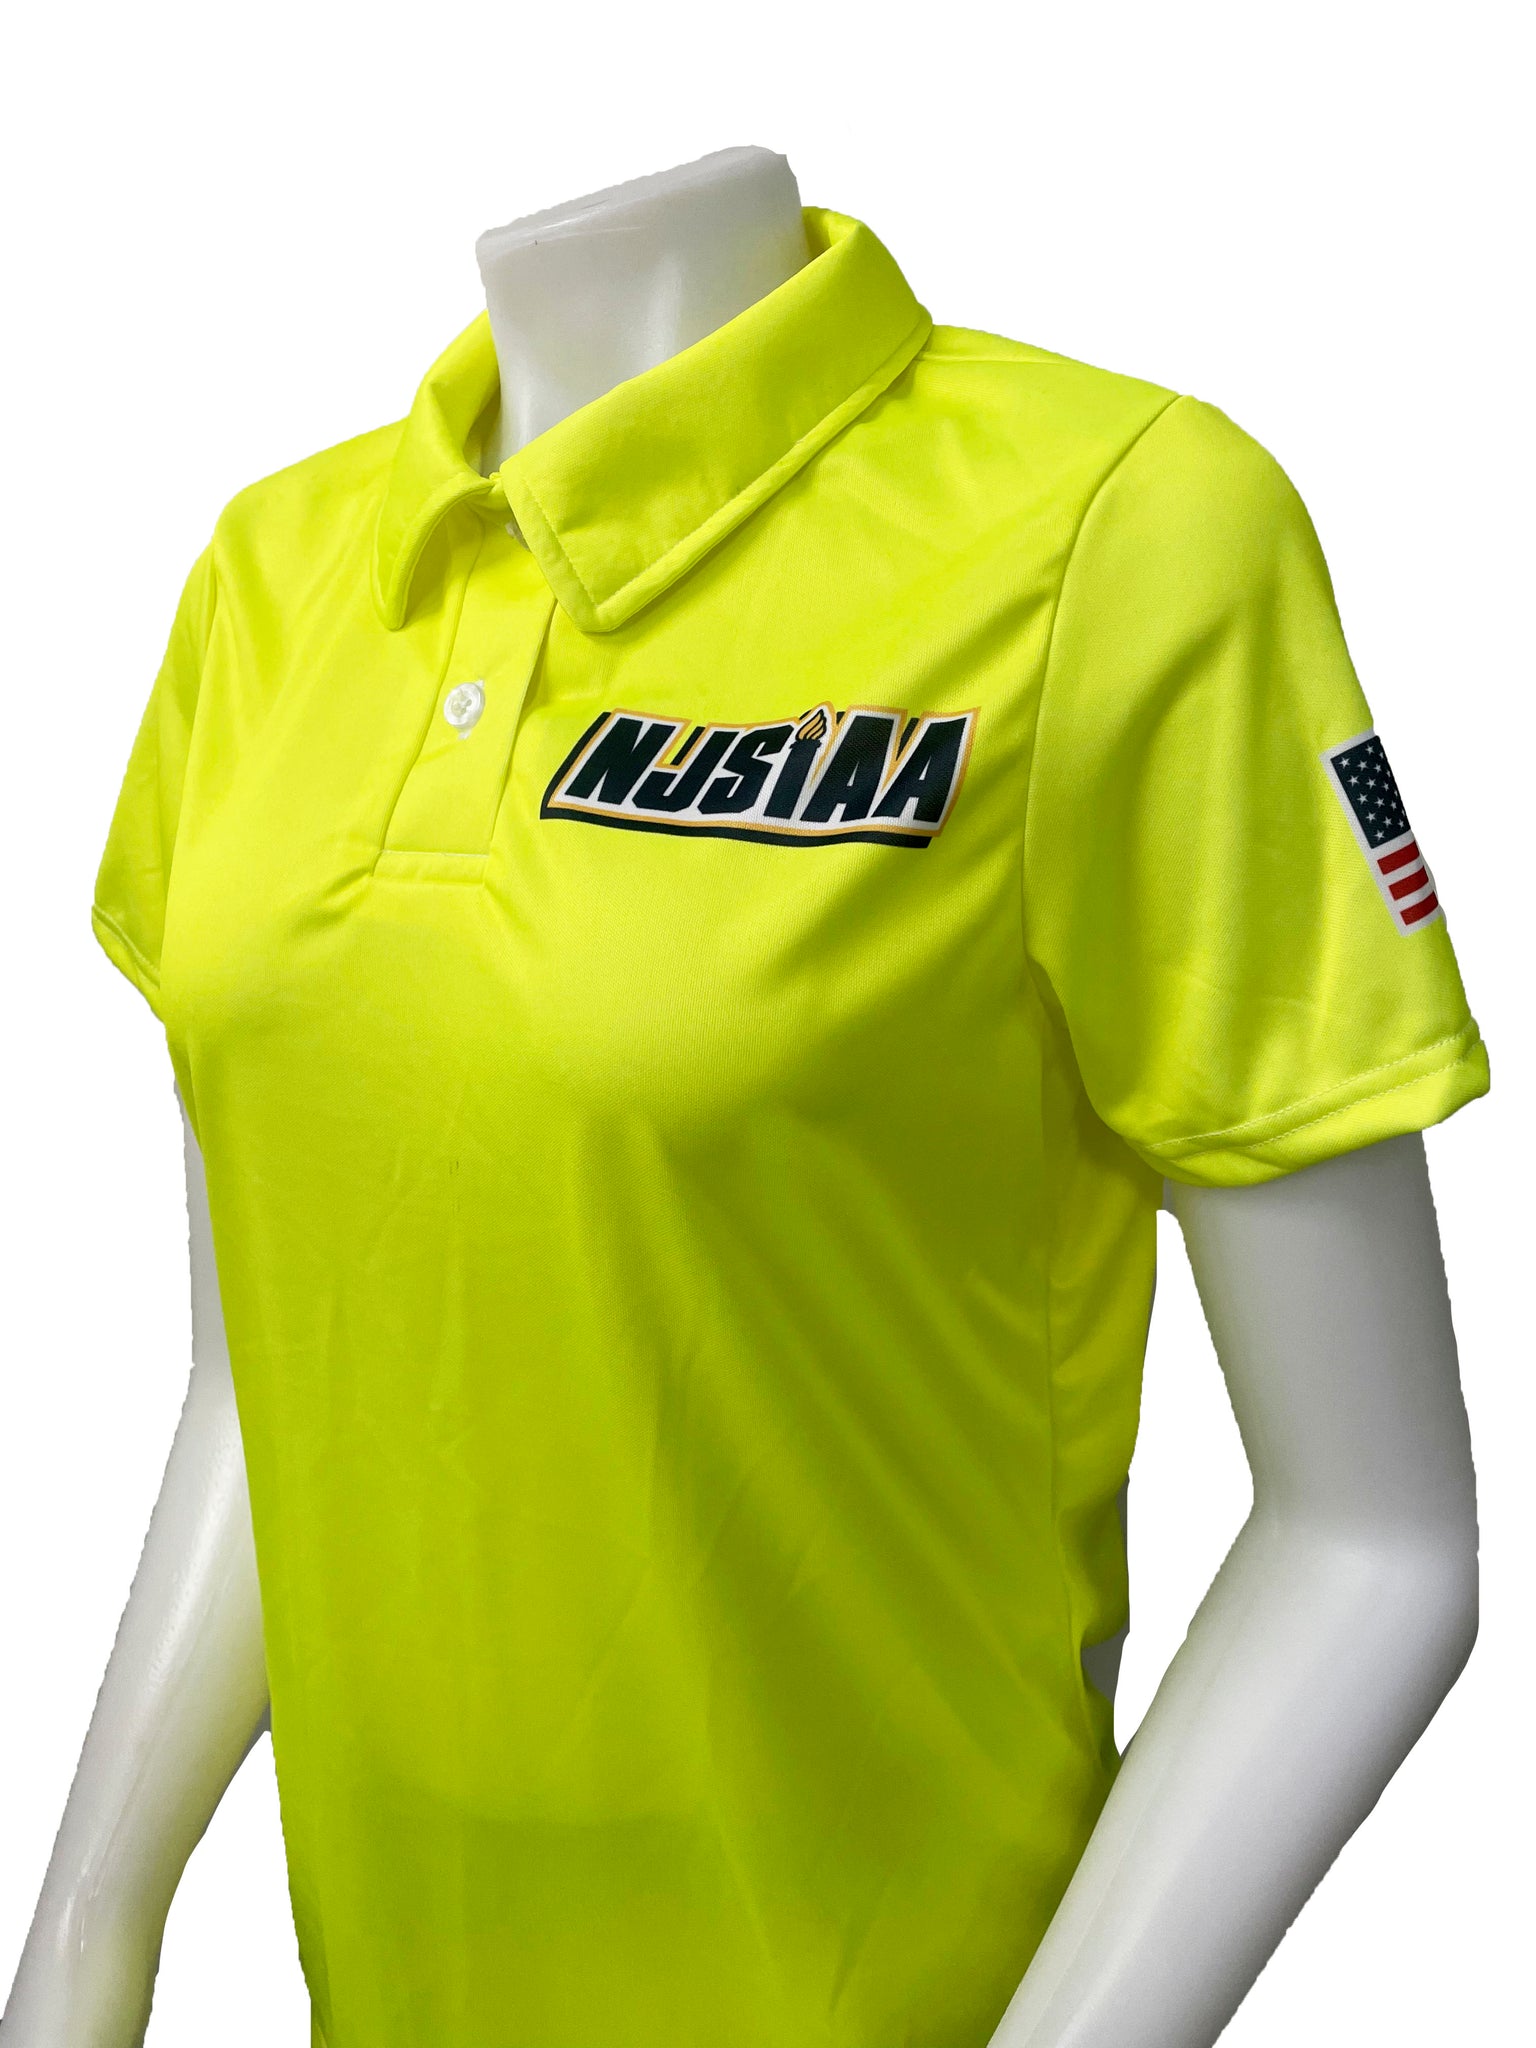 USA602NJ-FY - Smitty "Made in USA" - NJSIAA Women's Field Hockey Short Sleeve Shirt